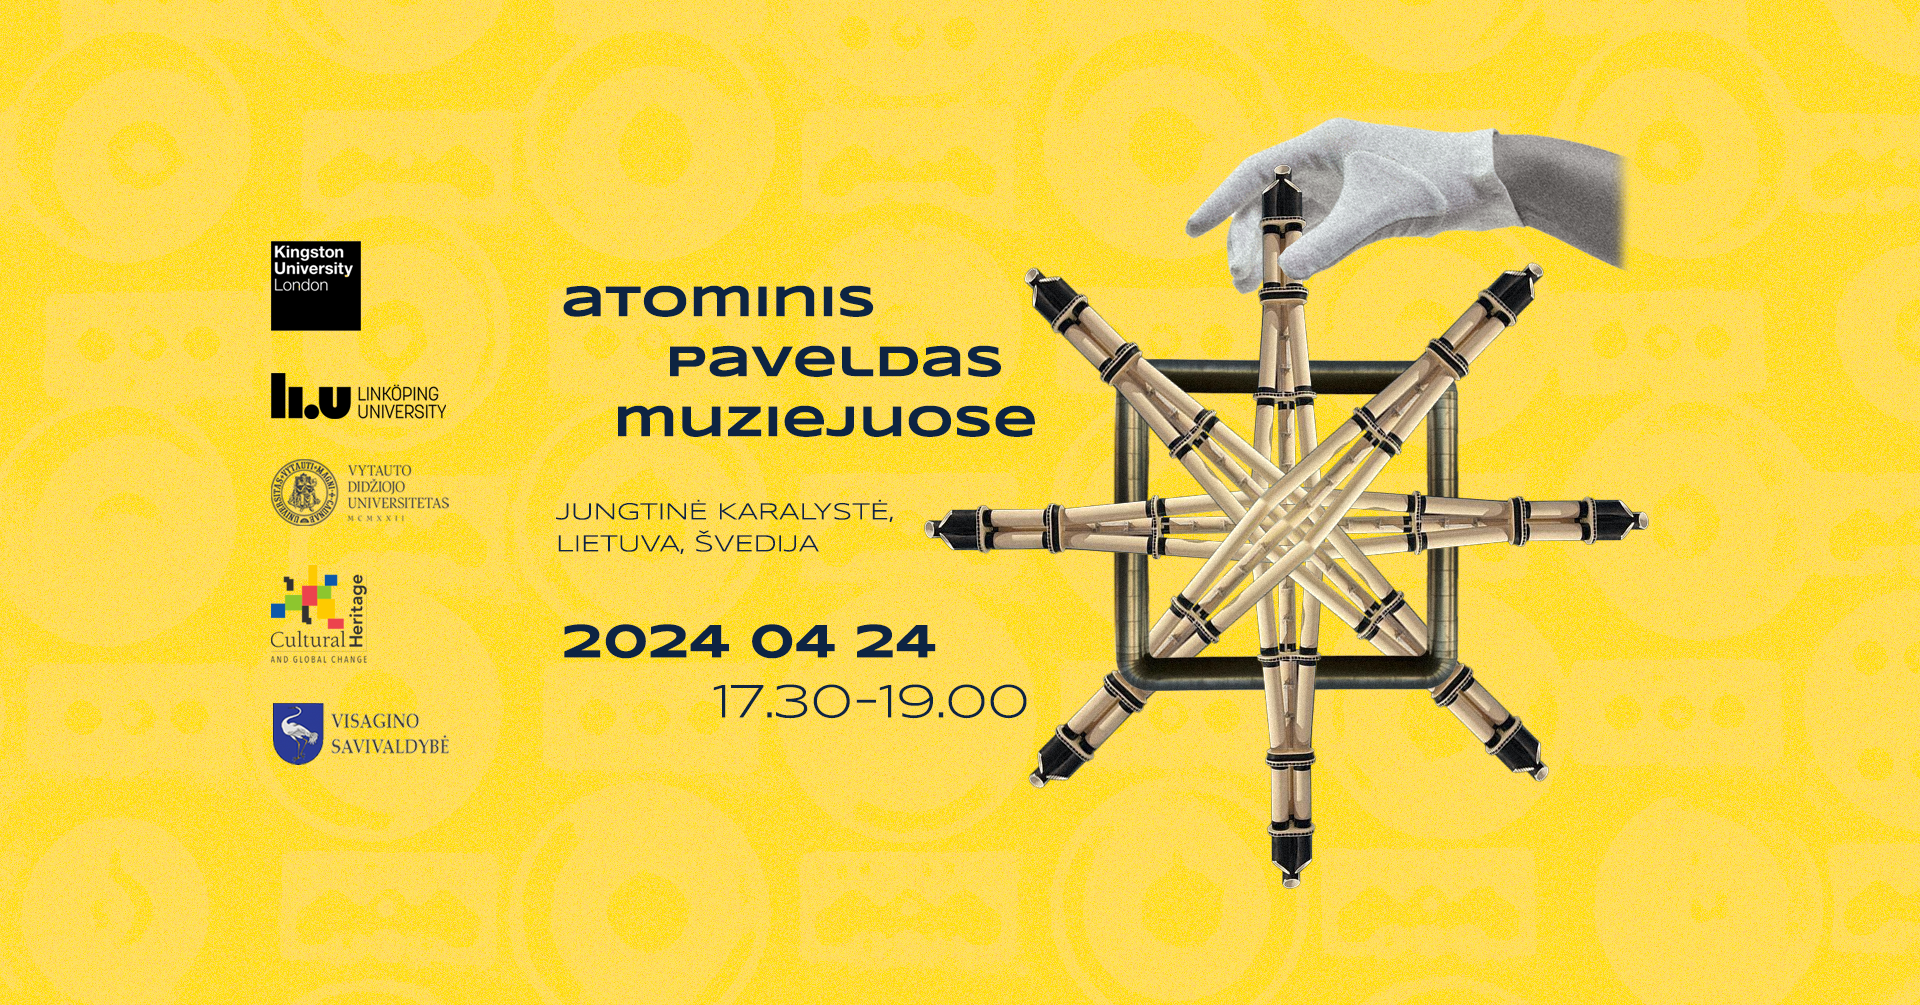 Приглашение на мероприятие «Атомное наследие в музеях: Великобритания, Литва, Швеция» обновлено